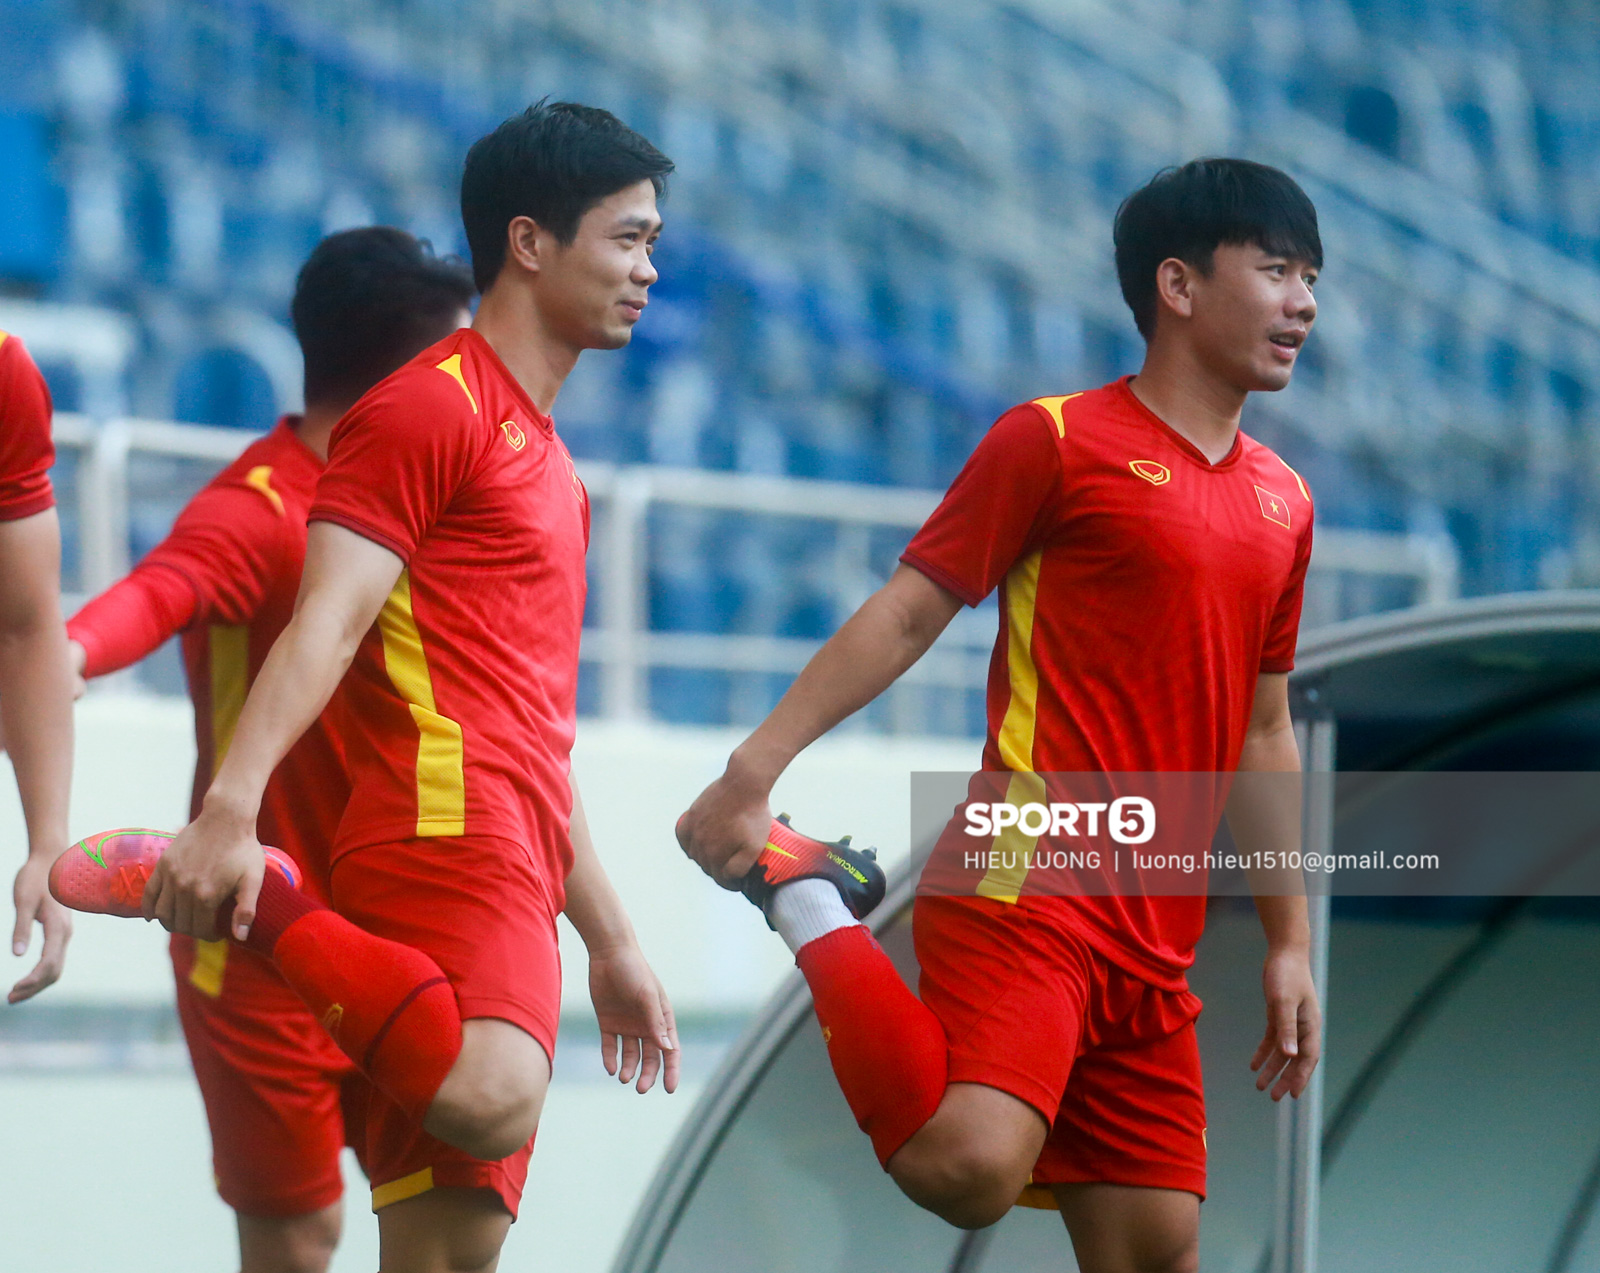 Danh sách số áo 23 tuyển thủ Việt Nam đối đầu Malaysia: Hoàng Anh thay Quang Hải - Ảnh 1.